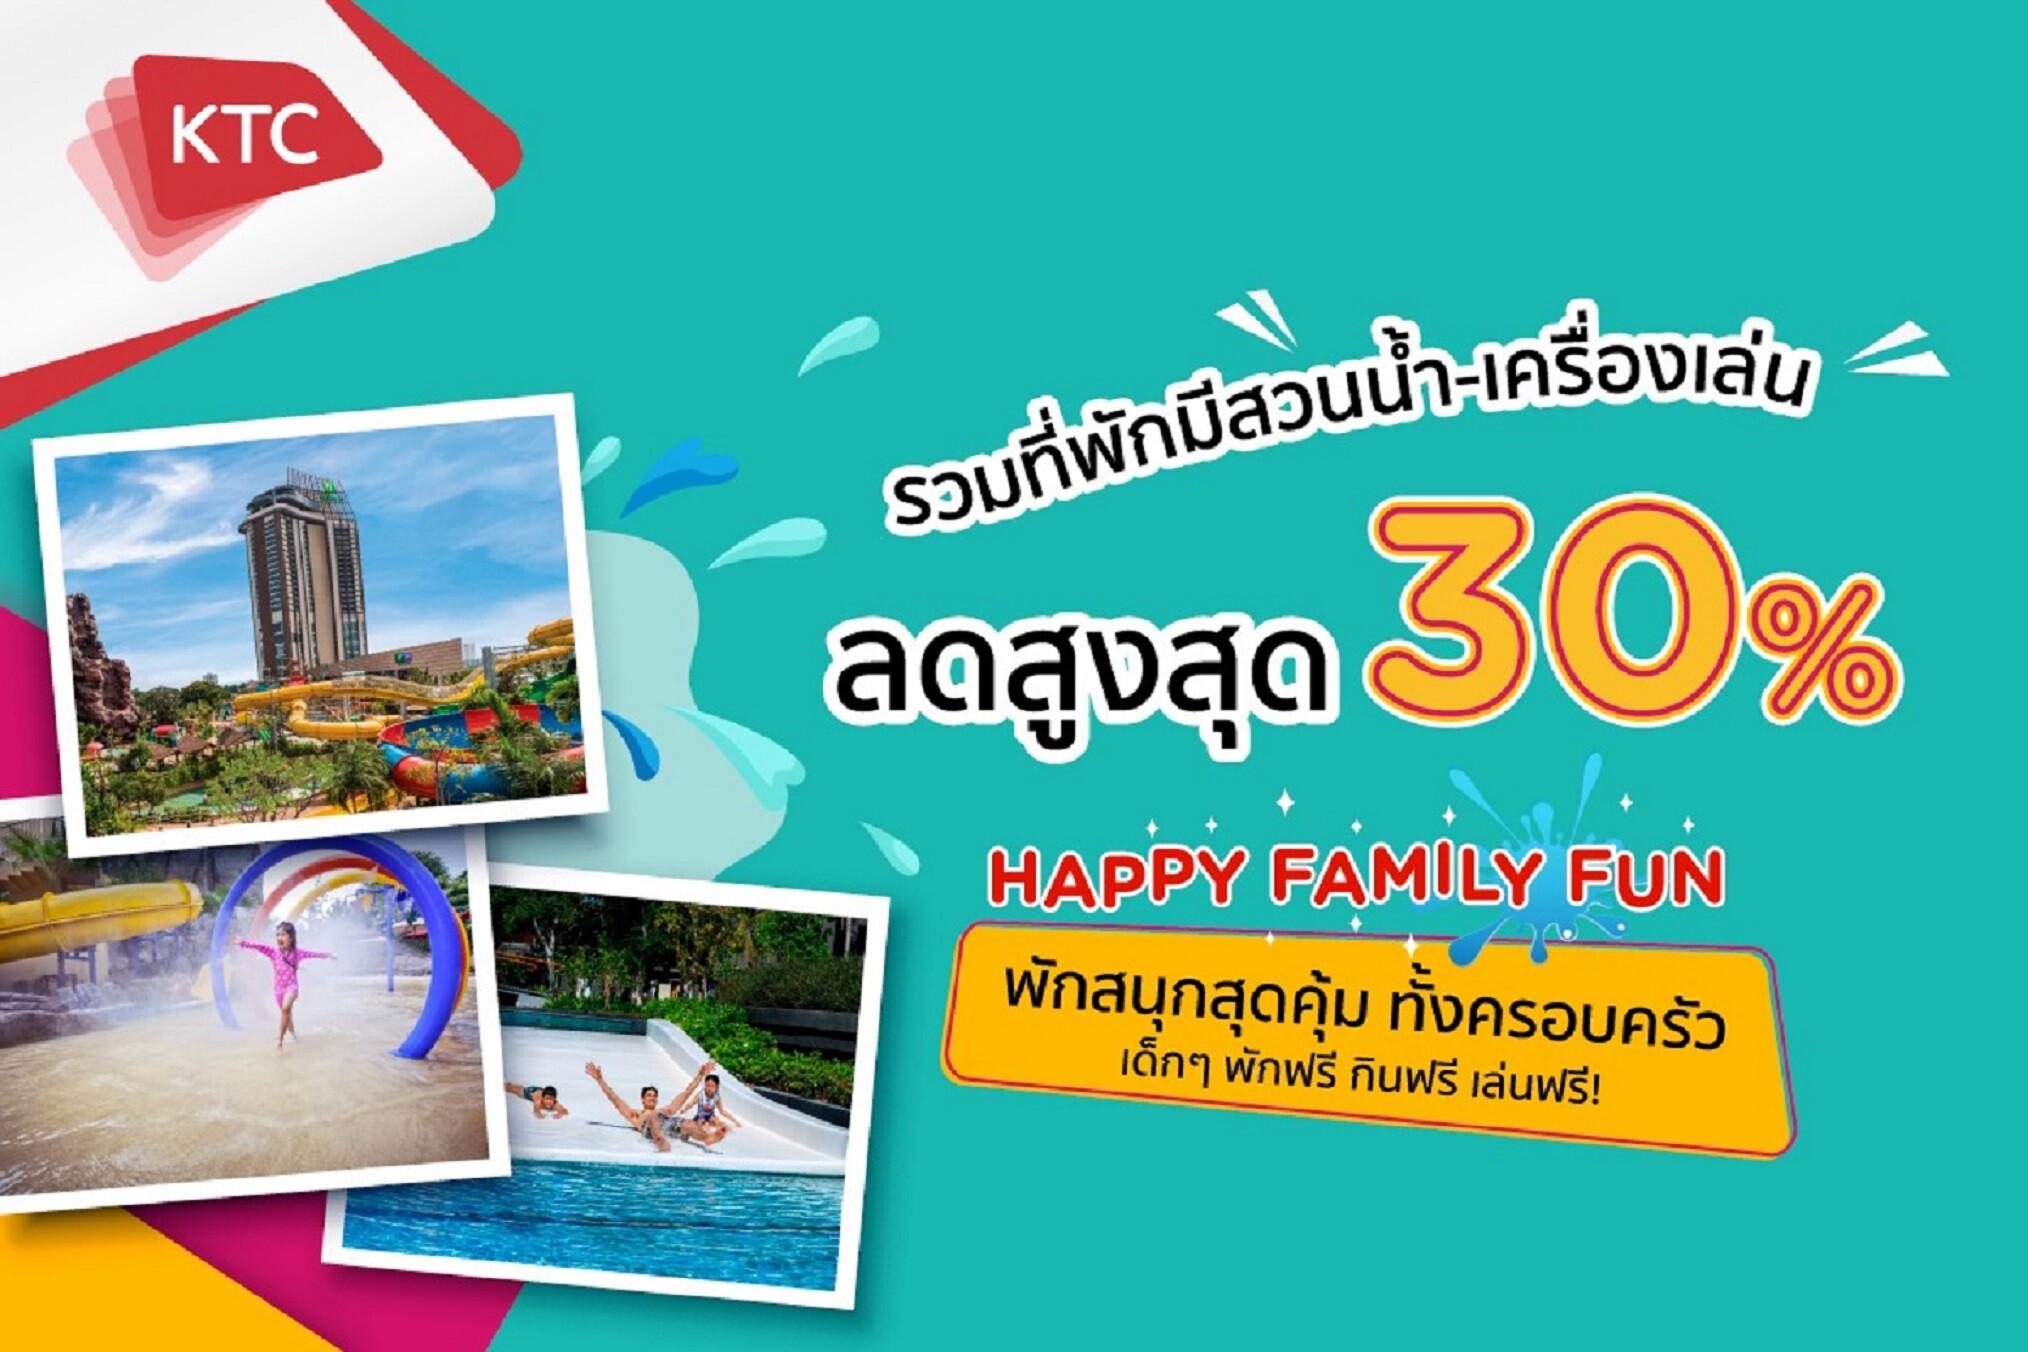 เคทีซีจัดโปร "Happy Family Fun" รวมดีลที่พักมีสวนน้ำ - เครื่องเล่น ลดสูงสุดถึง 30%